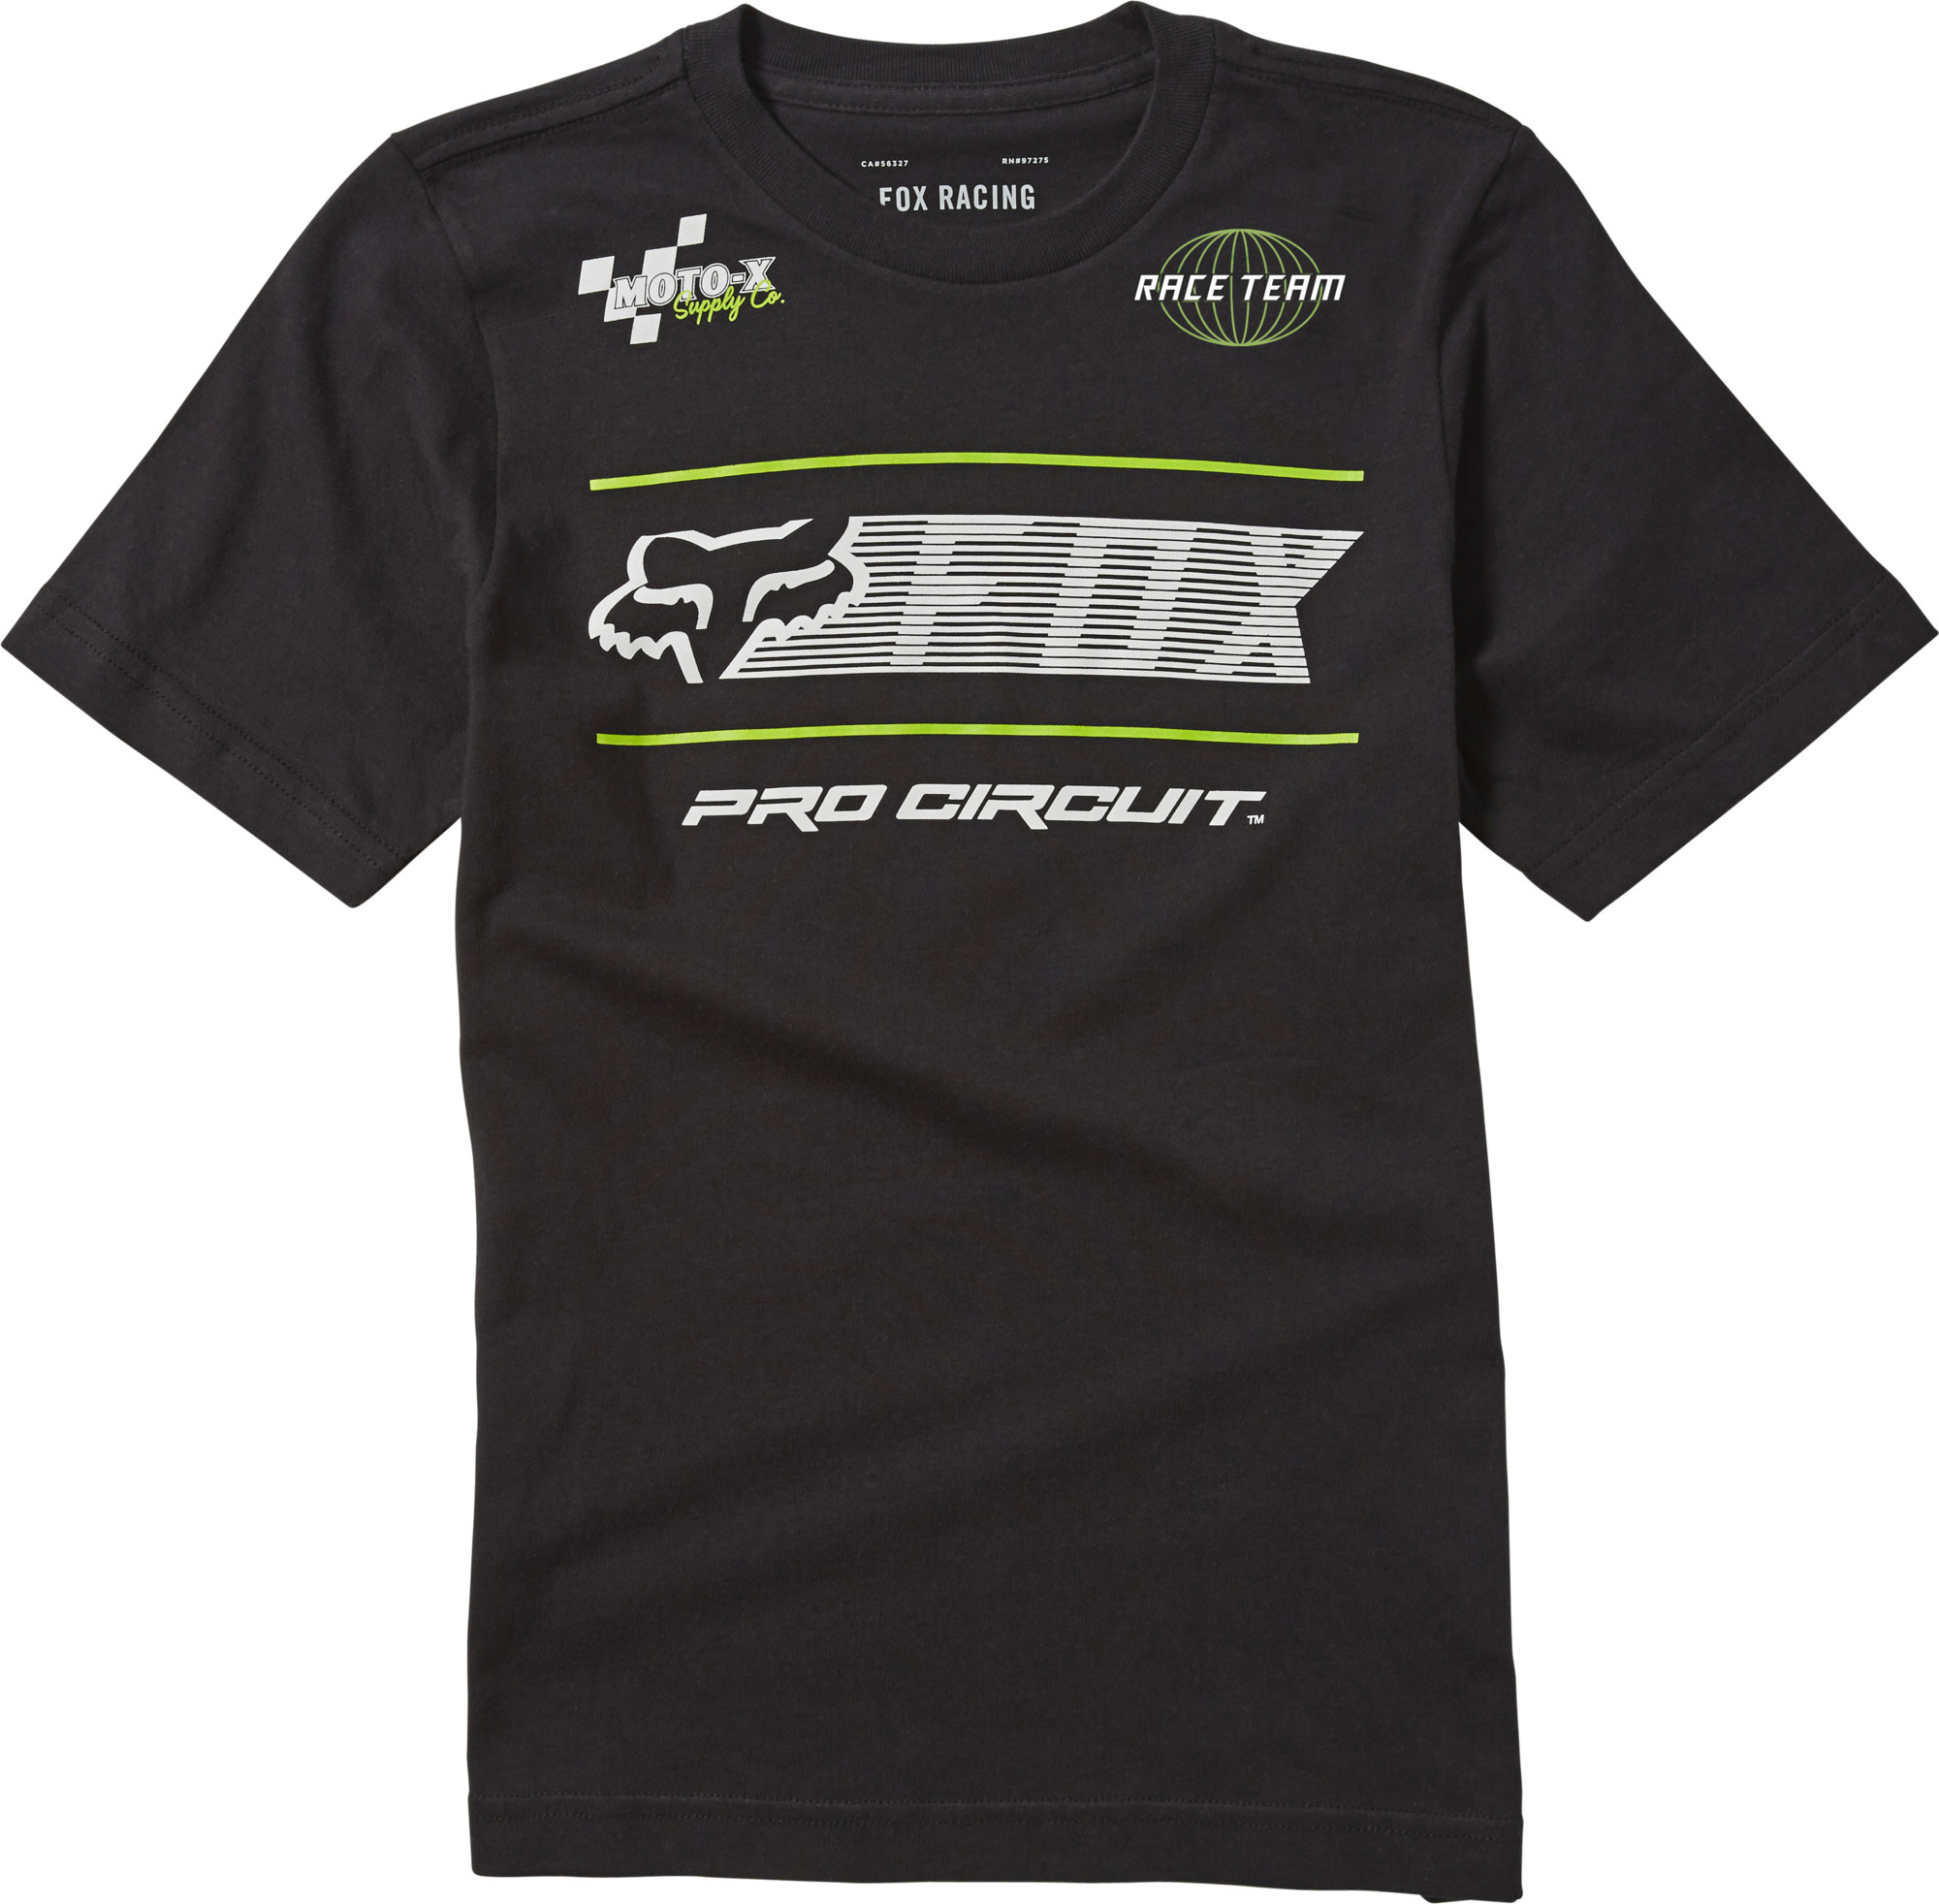 fox racing t-shirt shirts for kids pro circuit